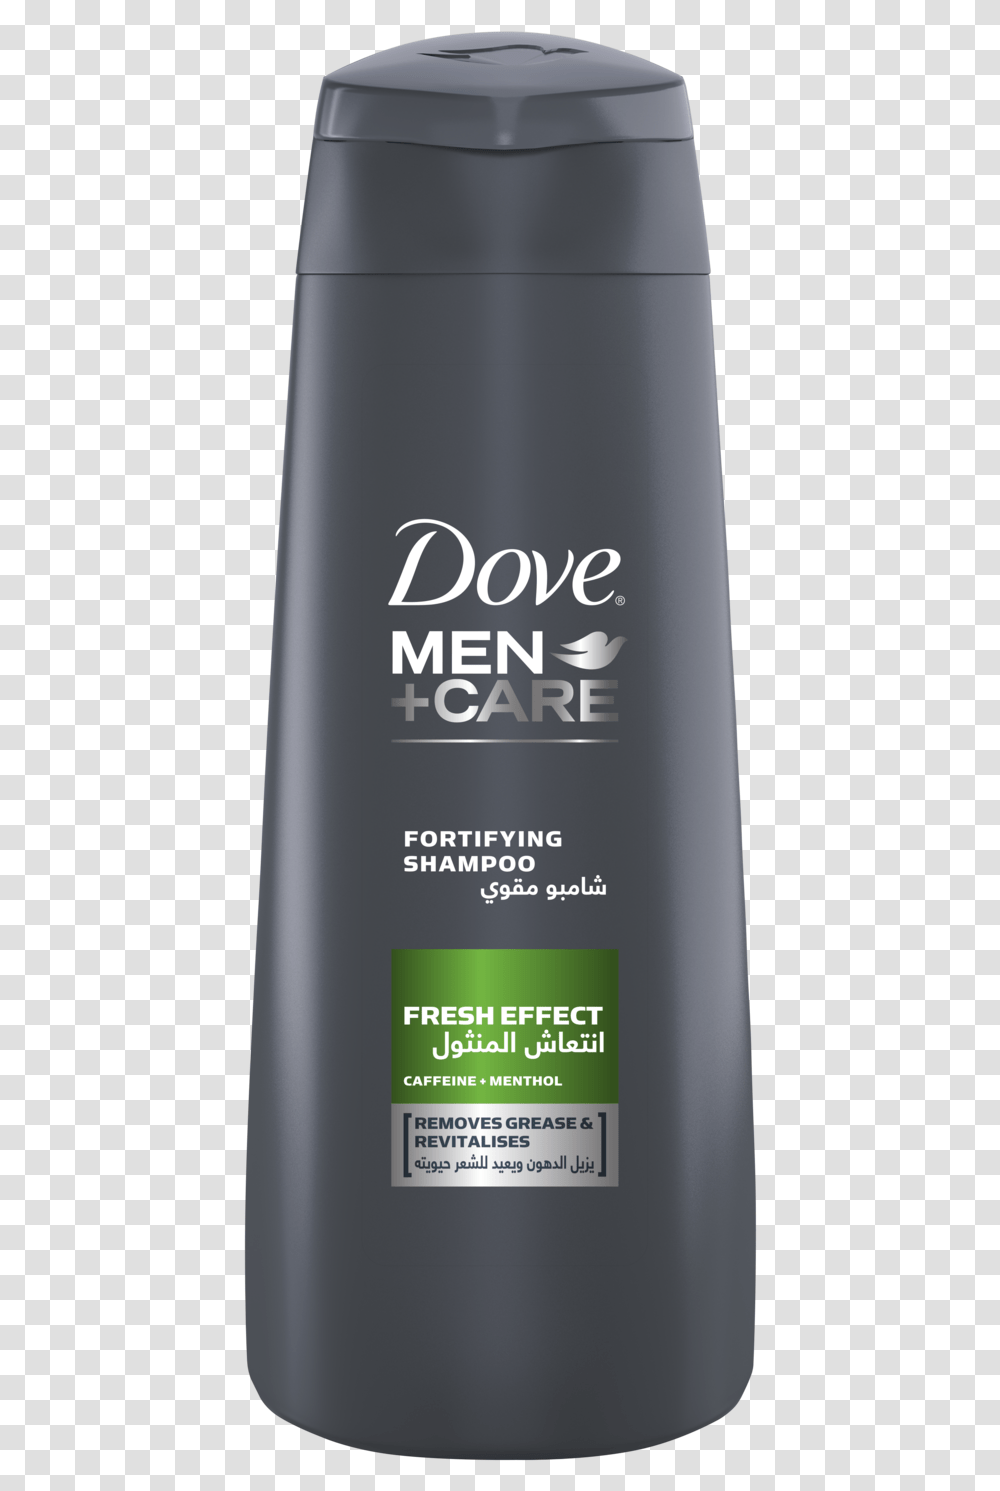 Shampoo Image Dove Men Care, Shaker, Bottle, Aluminium, Tin Transparent Png